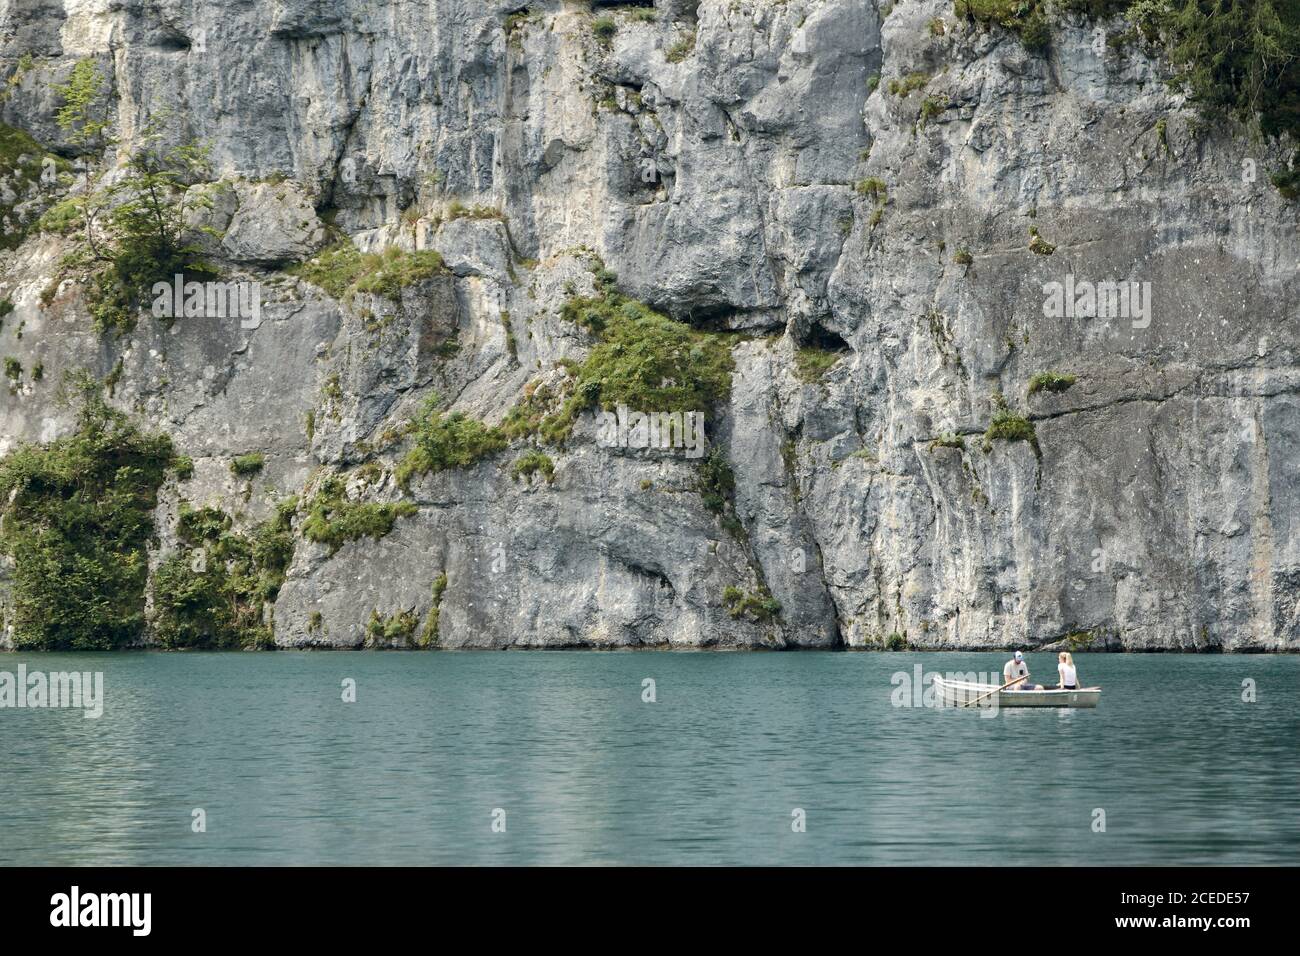 Coppia in una barca a remi sul lago Koenigssee godendo pittoresco scenario di fronte all'enorme parete rocciosa Foto Stock